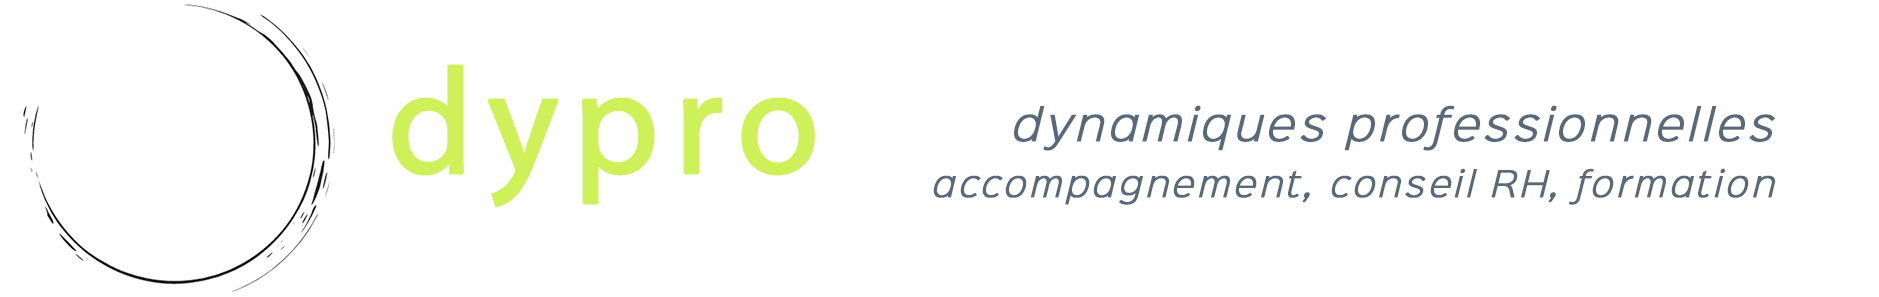 logo de dypro - dynamiques professionnelles, Vanessa Wirth